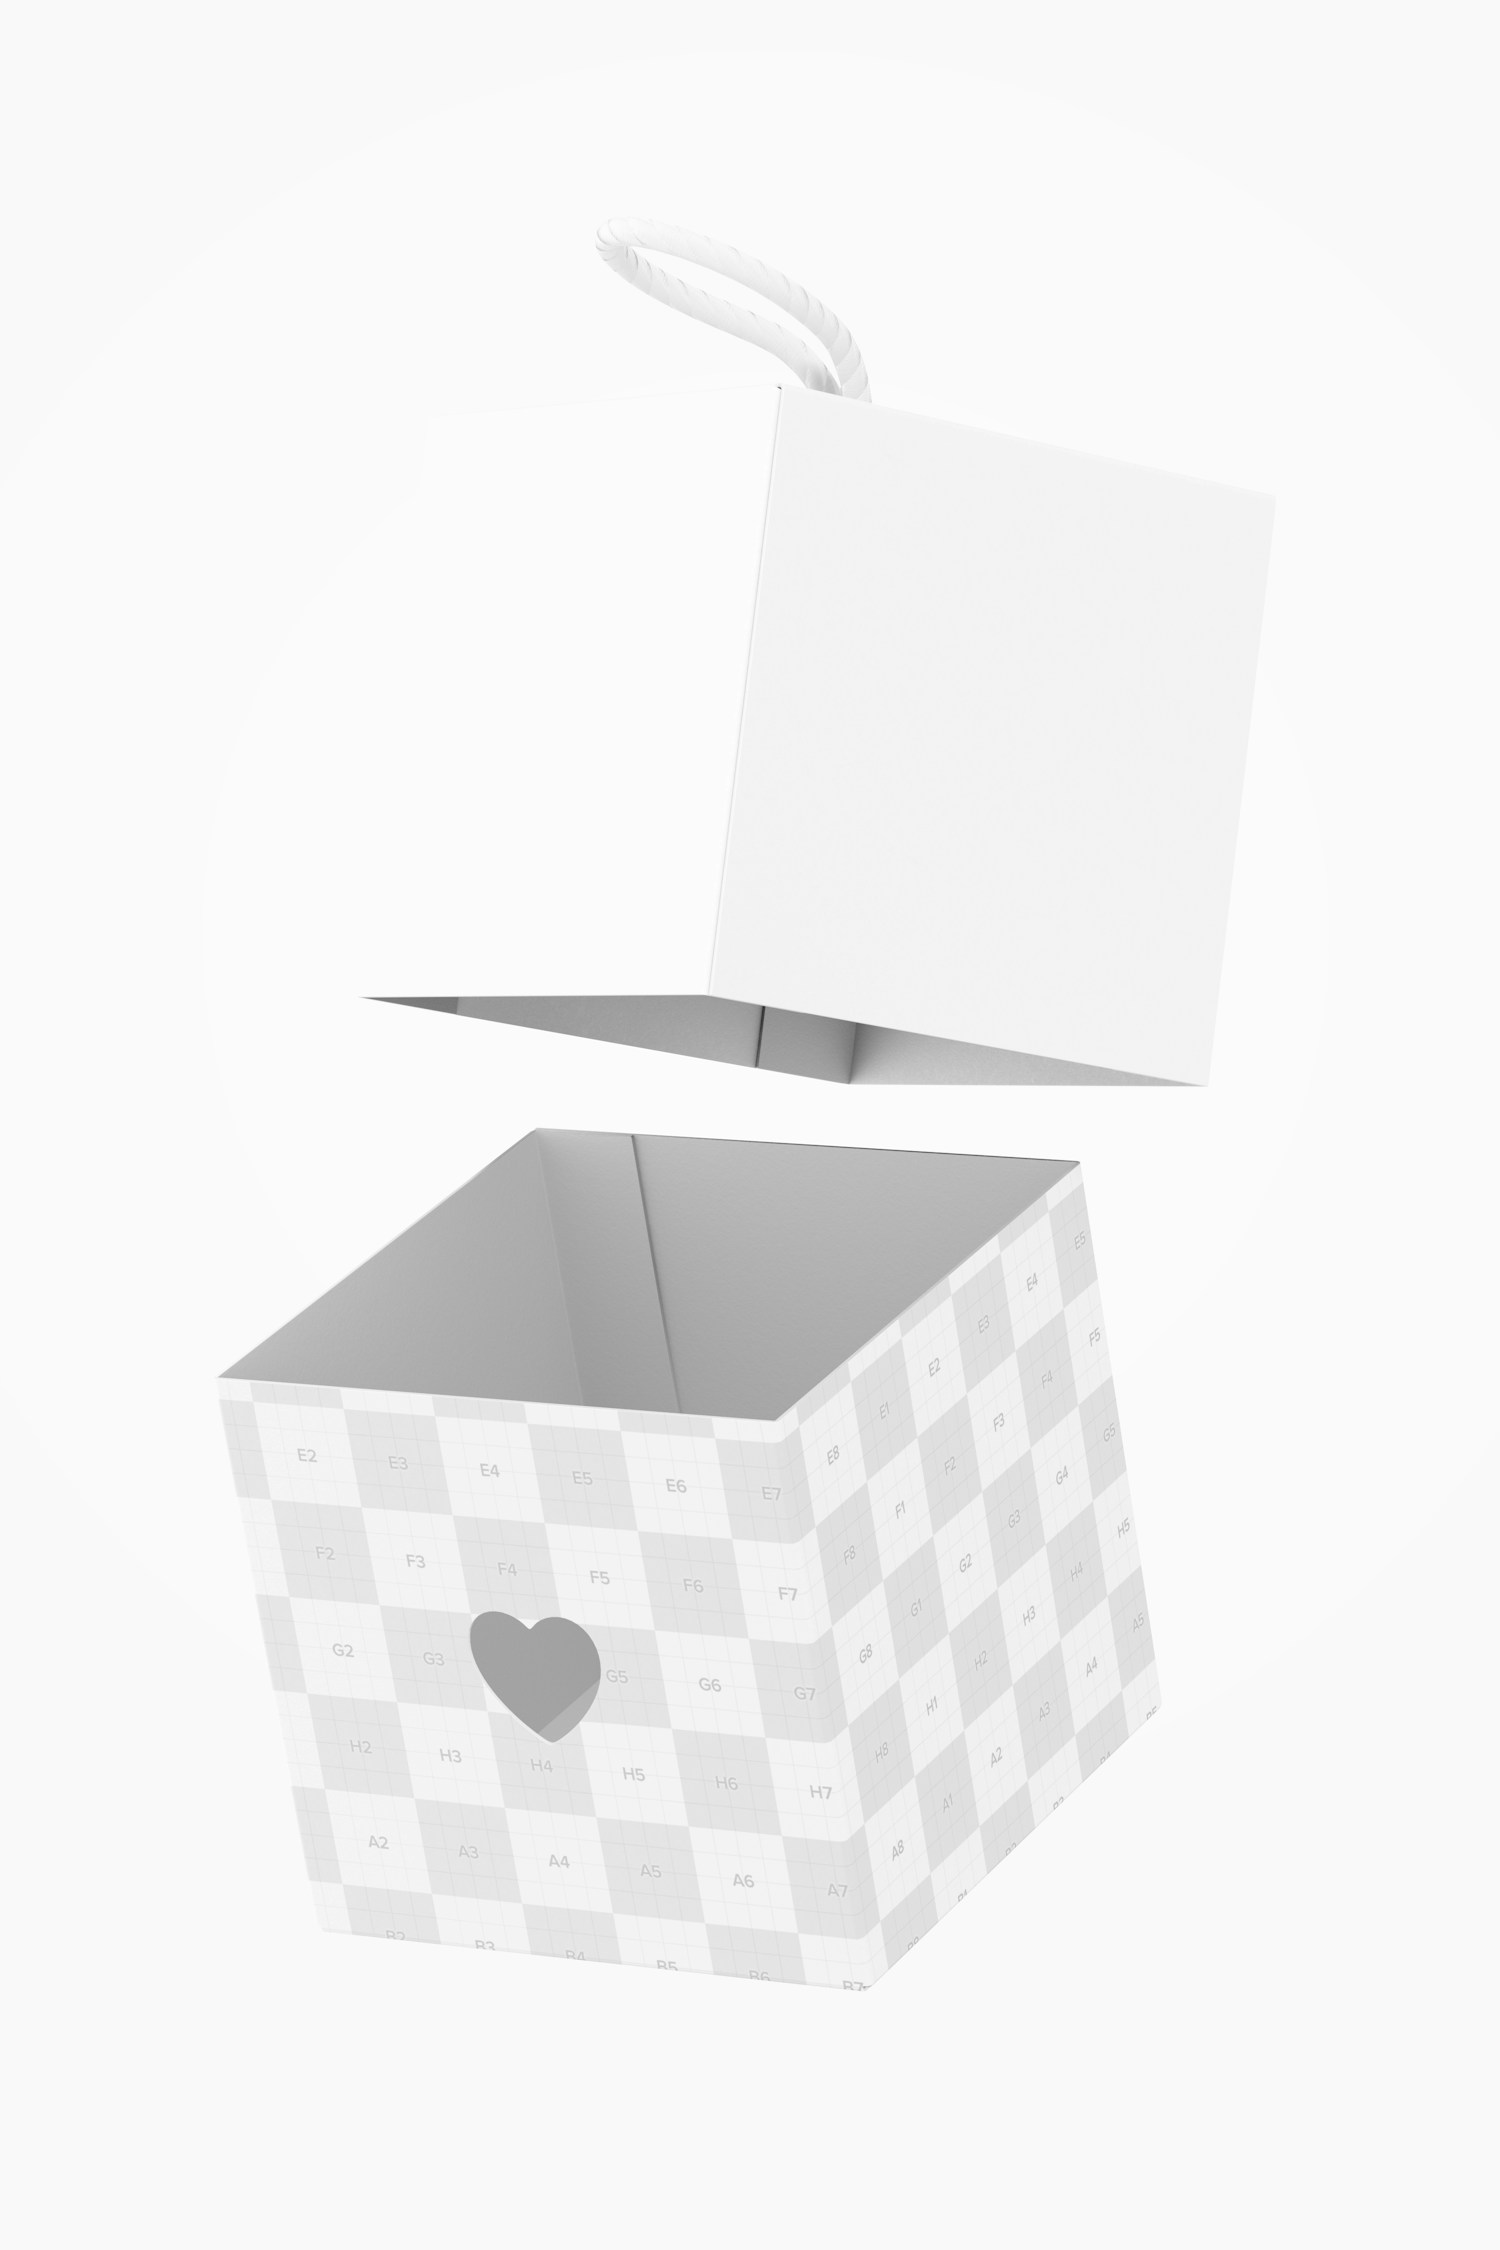 Maqueta de Caja Kraft Cúbica Con Corazón, Flotando